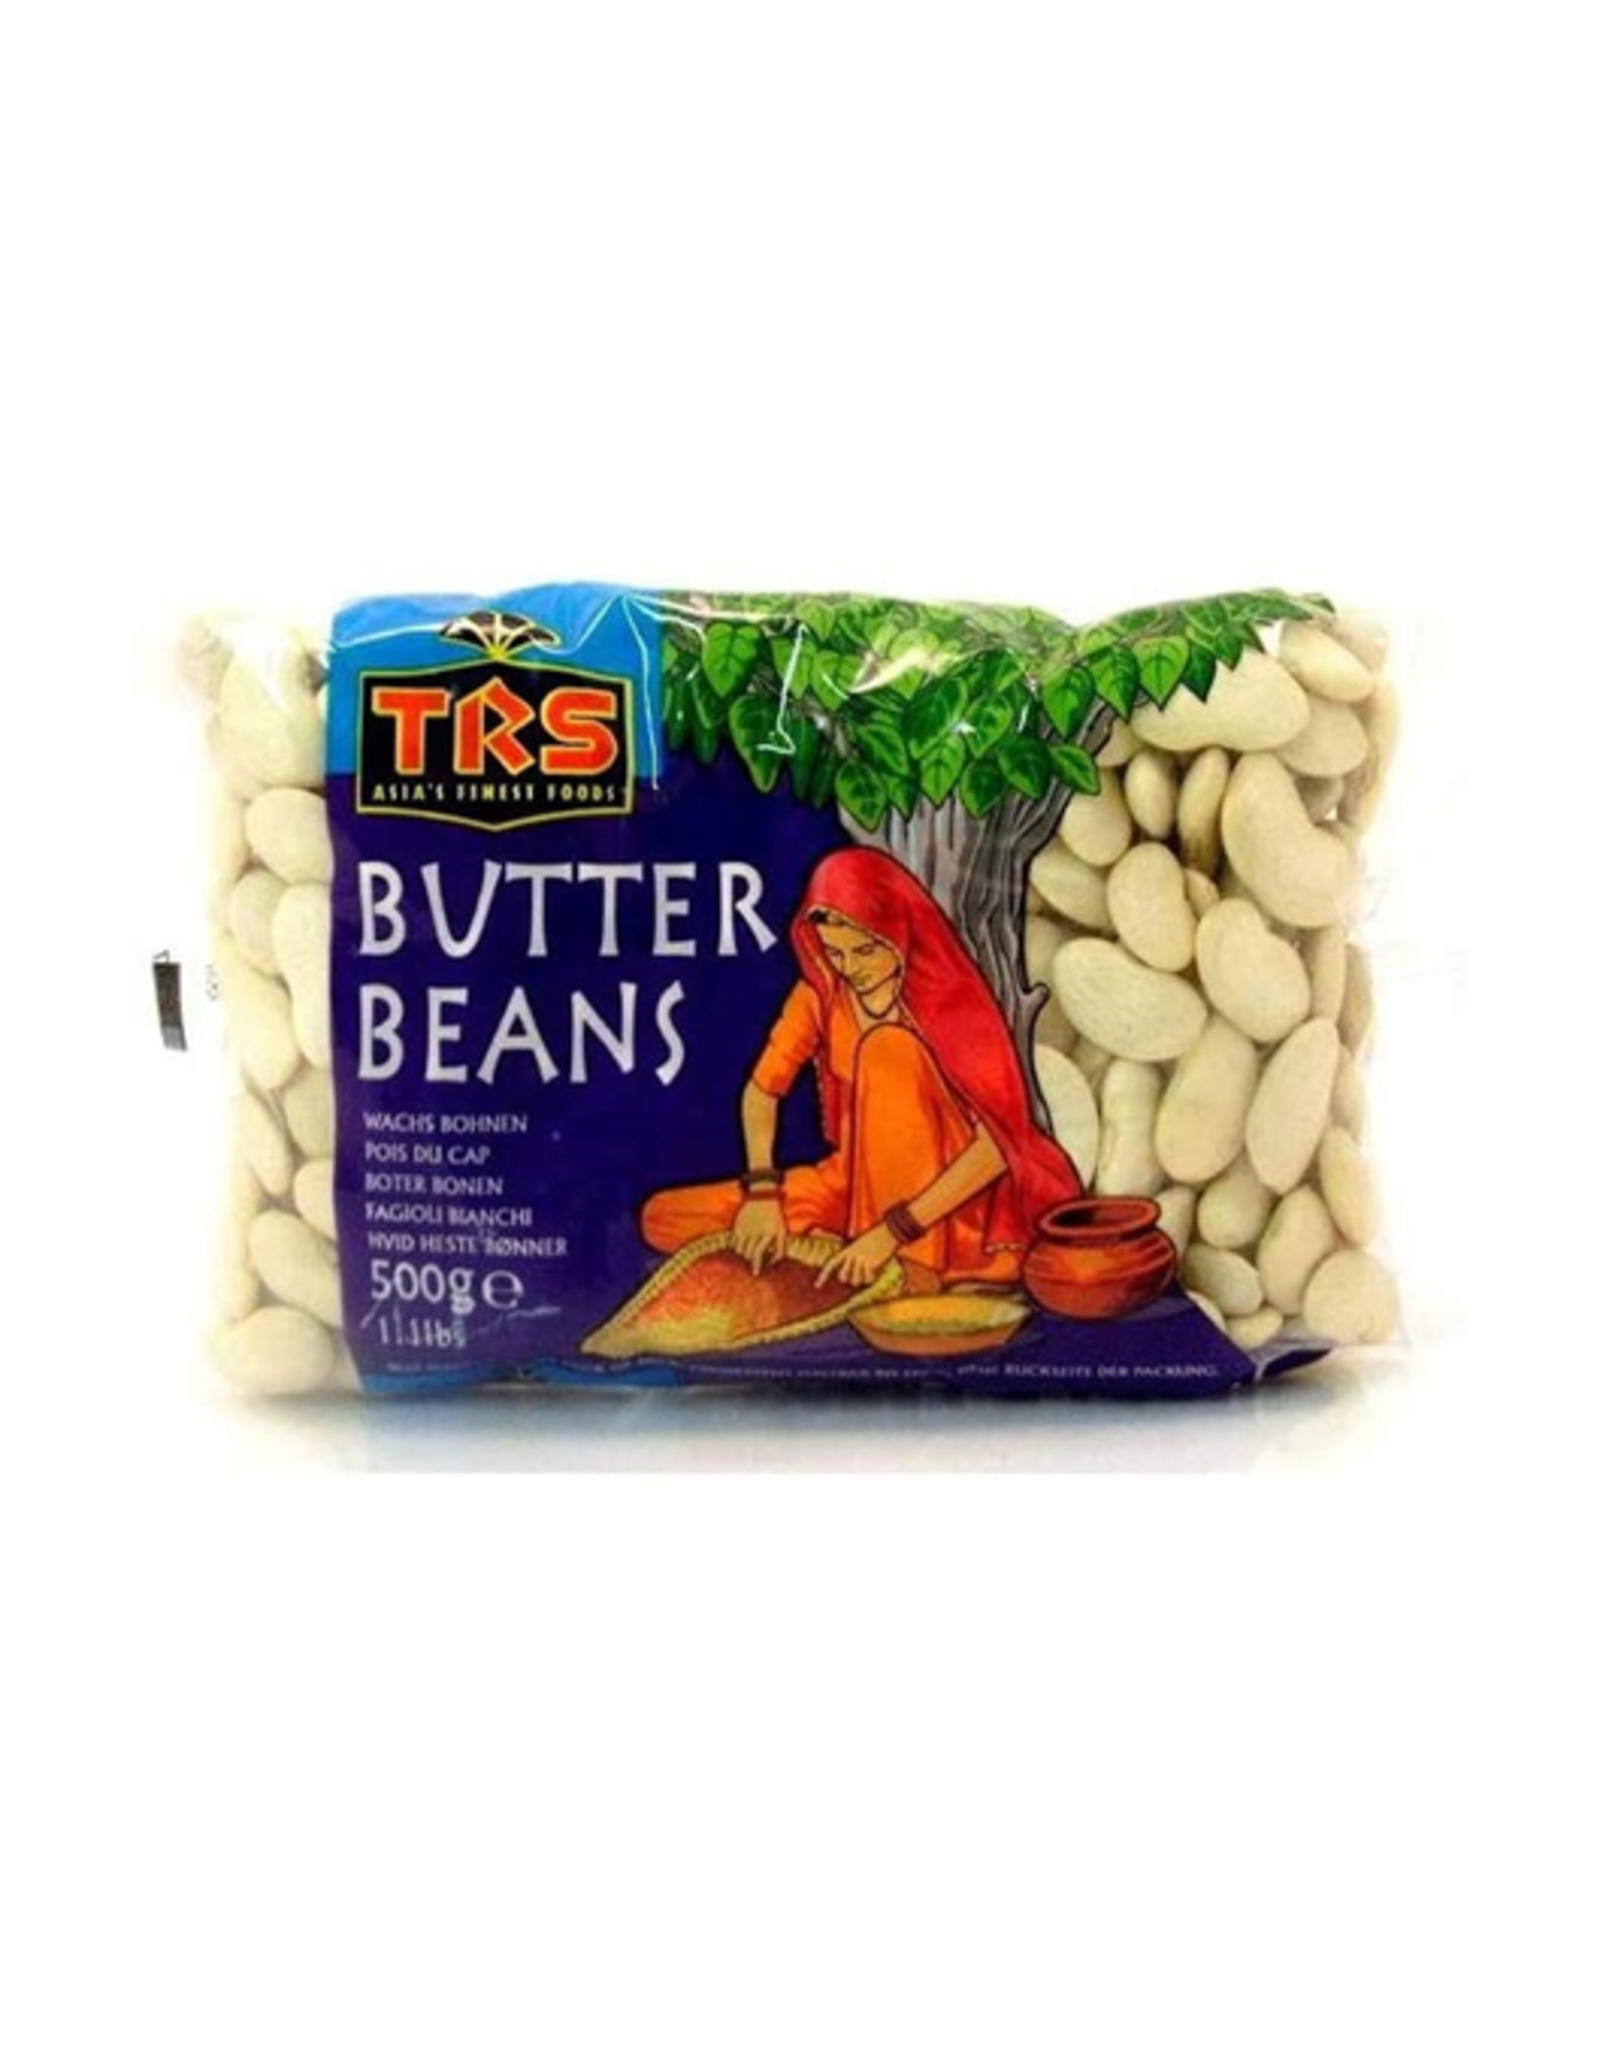 TRS Butter Beans Boterbonen